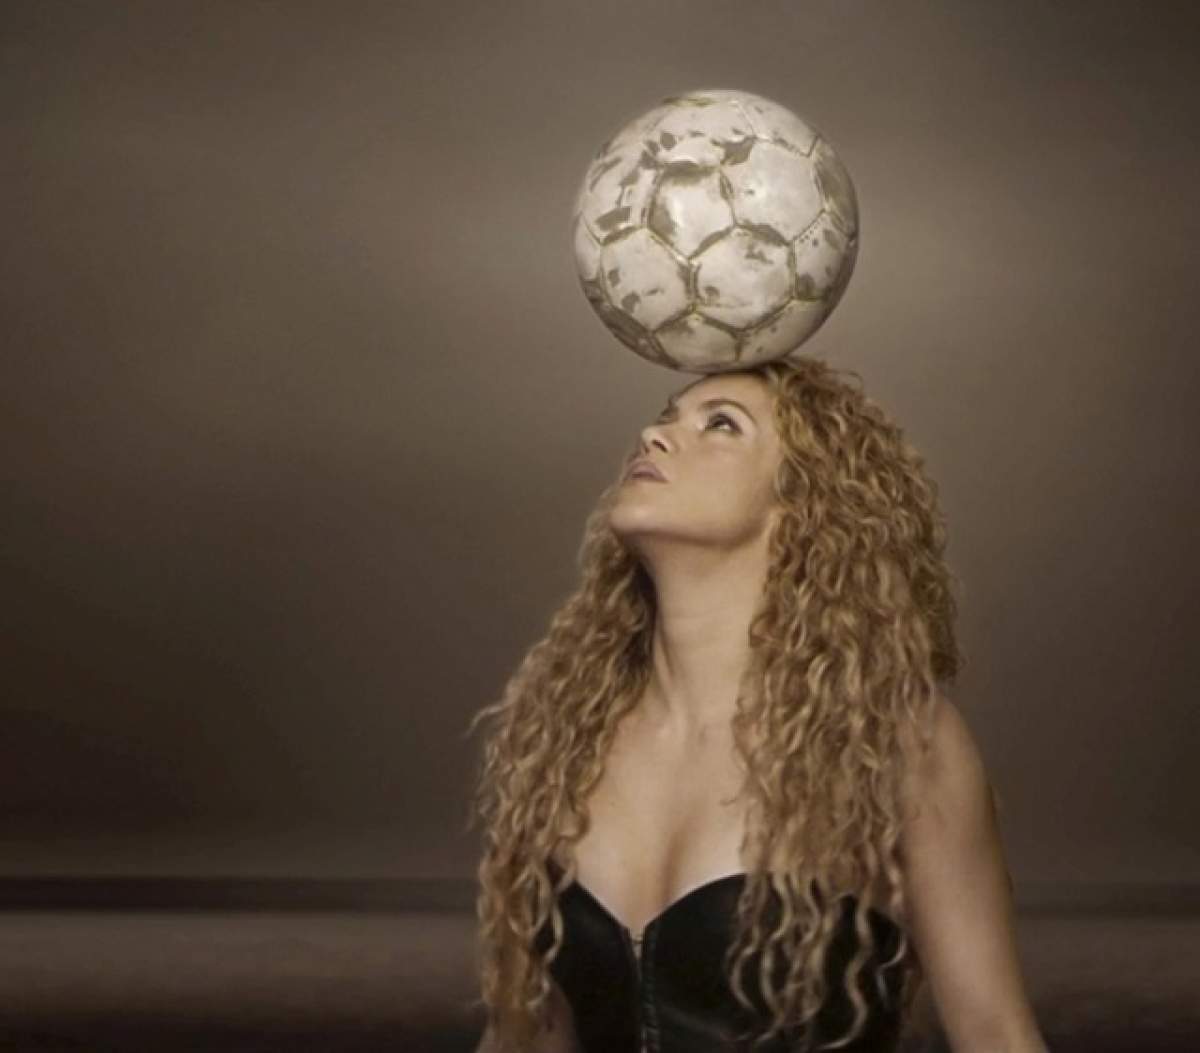 FOTO Shakira şi-a întâlnit marea dragoste la Campionatul Mondial! Imagini emoţionante